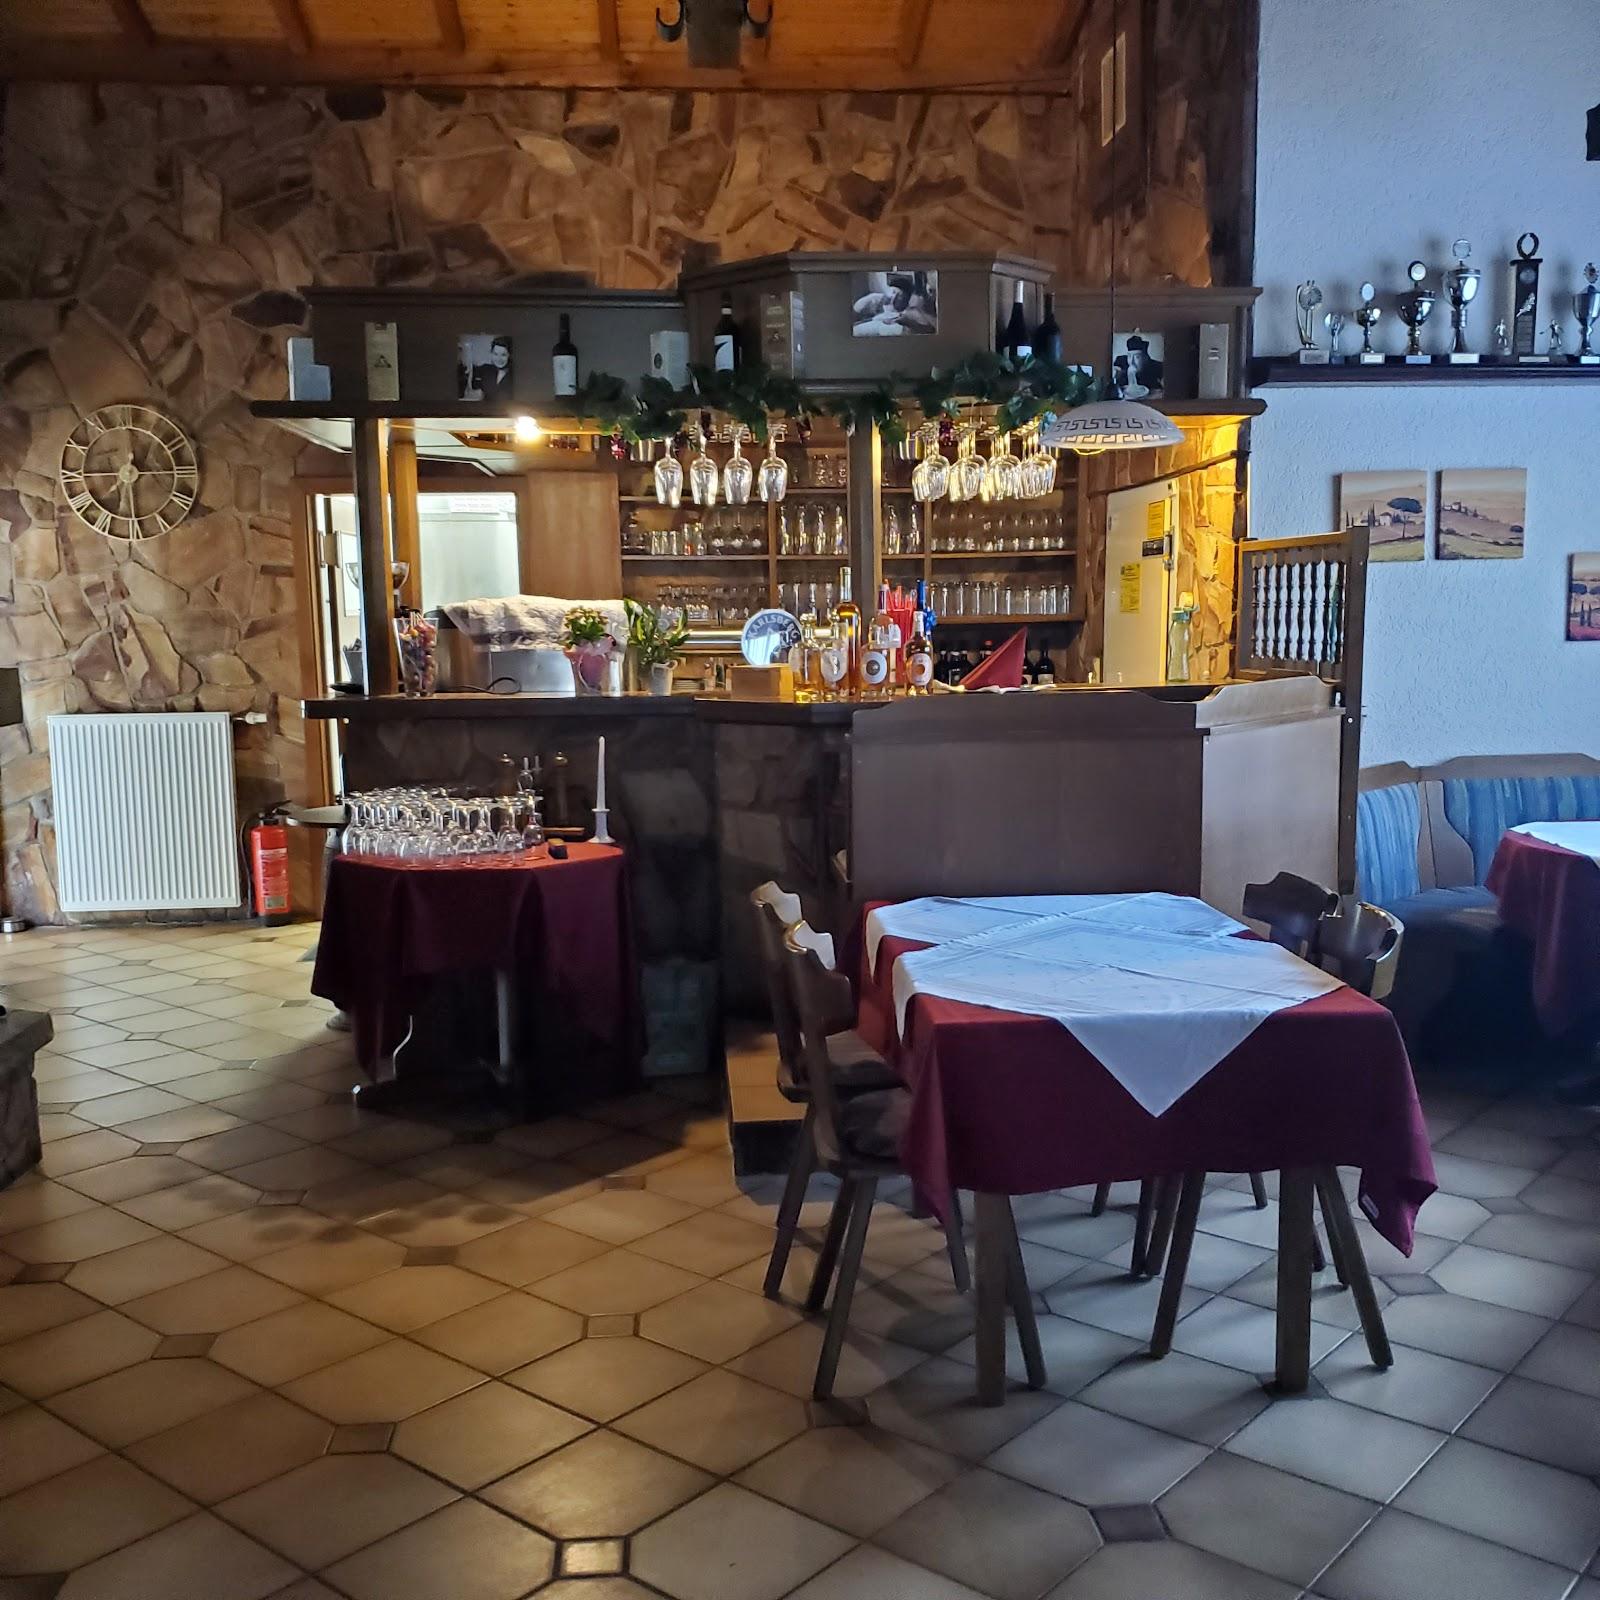 Restaurant "La Vite" in Kleinniedesheim